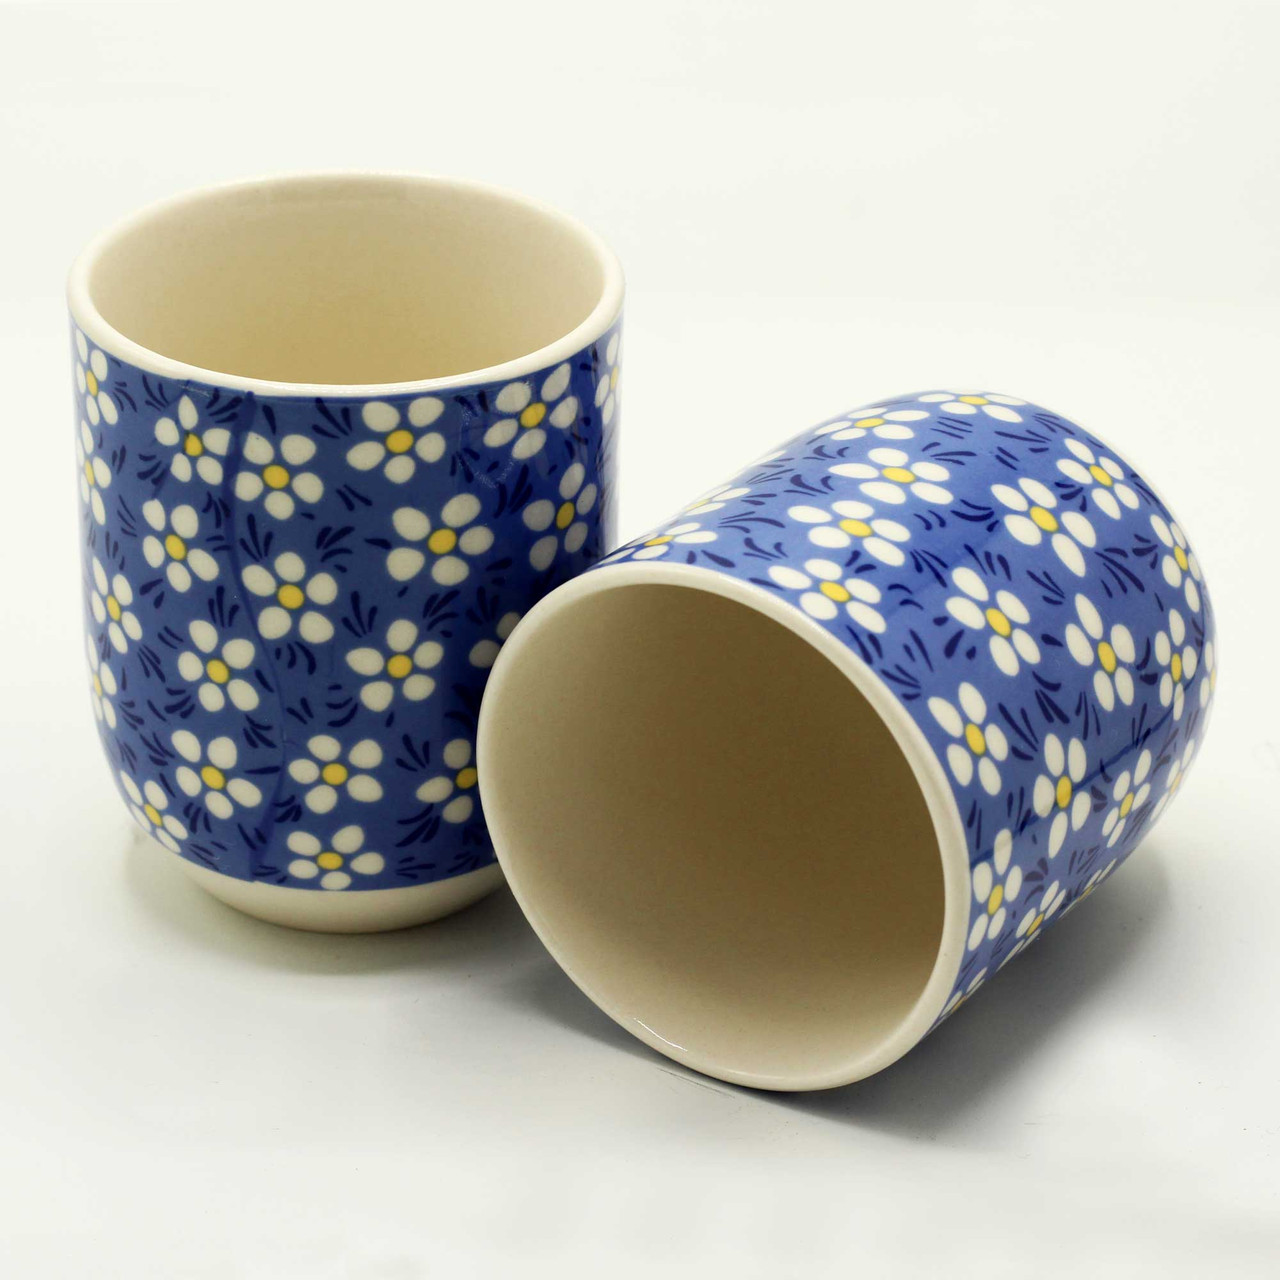 Tea Cups with Blue Daisy Design